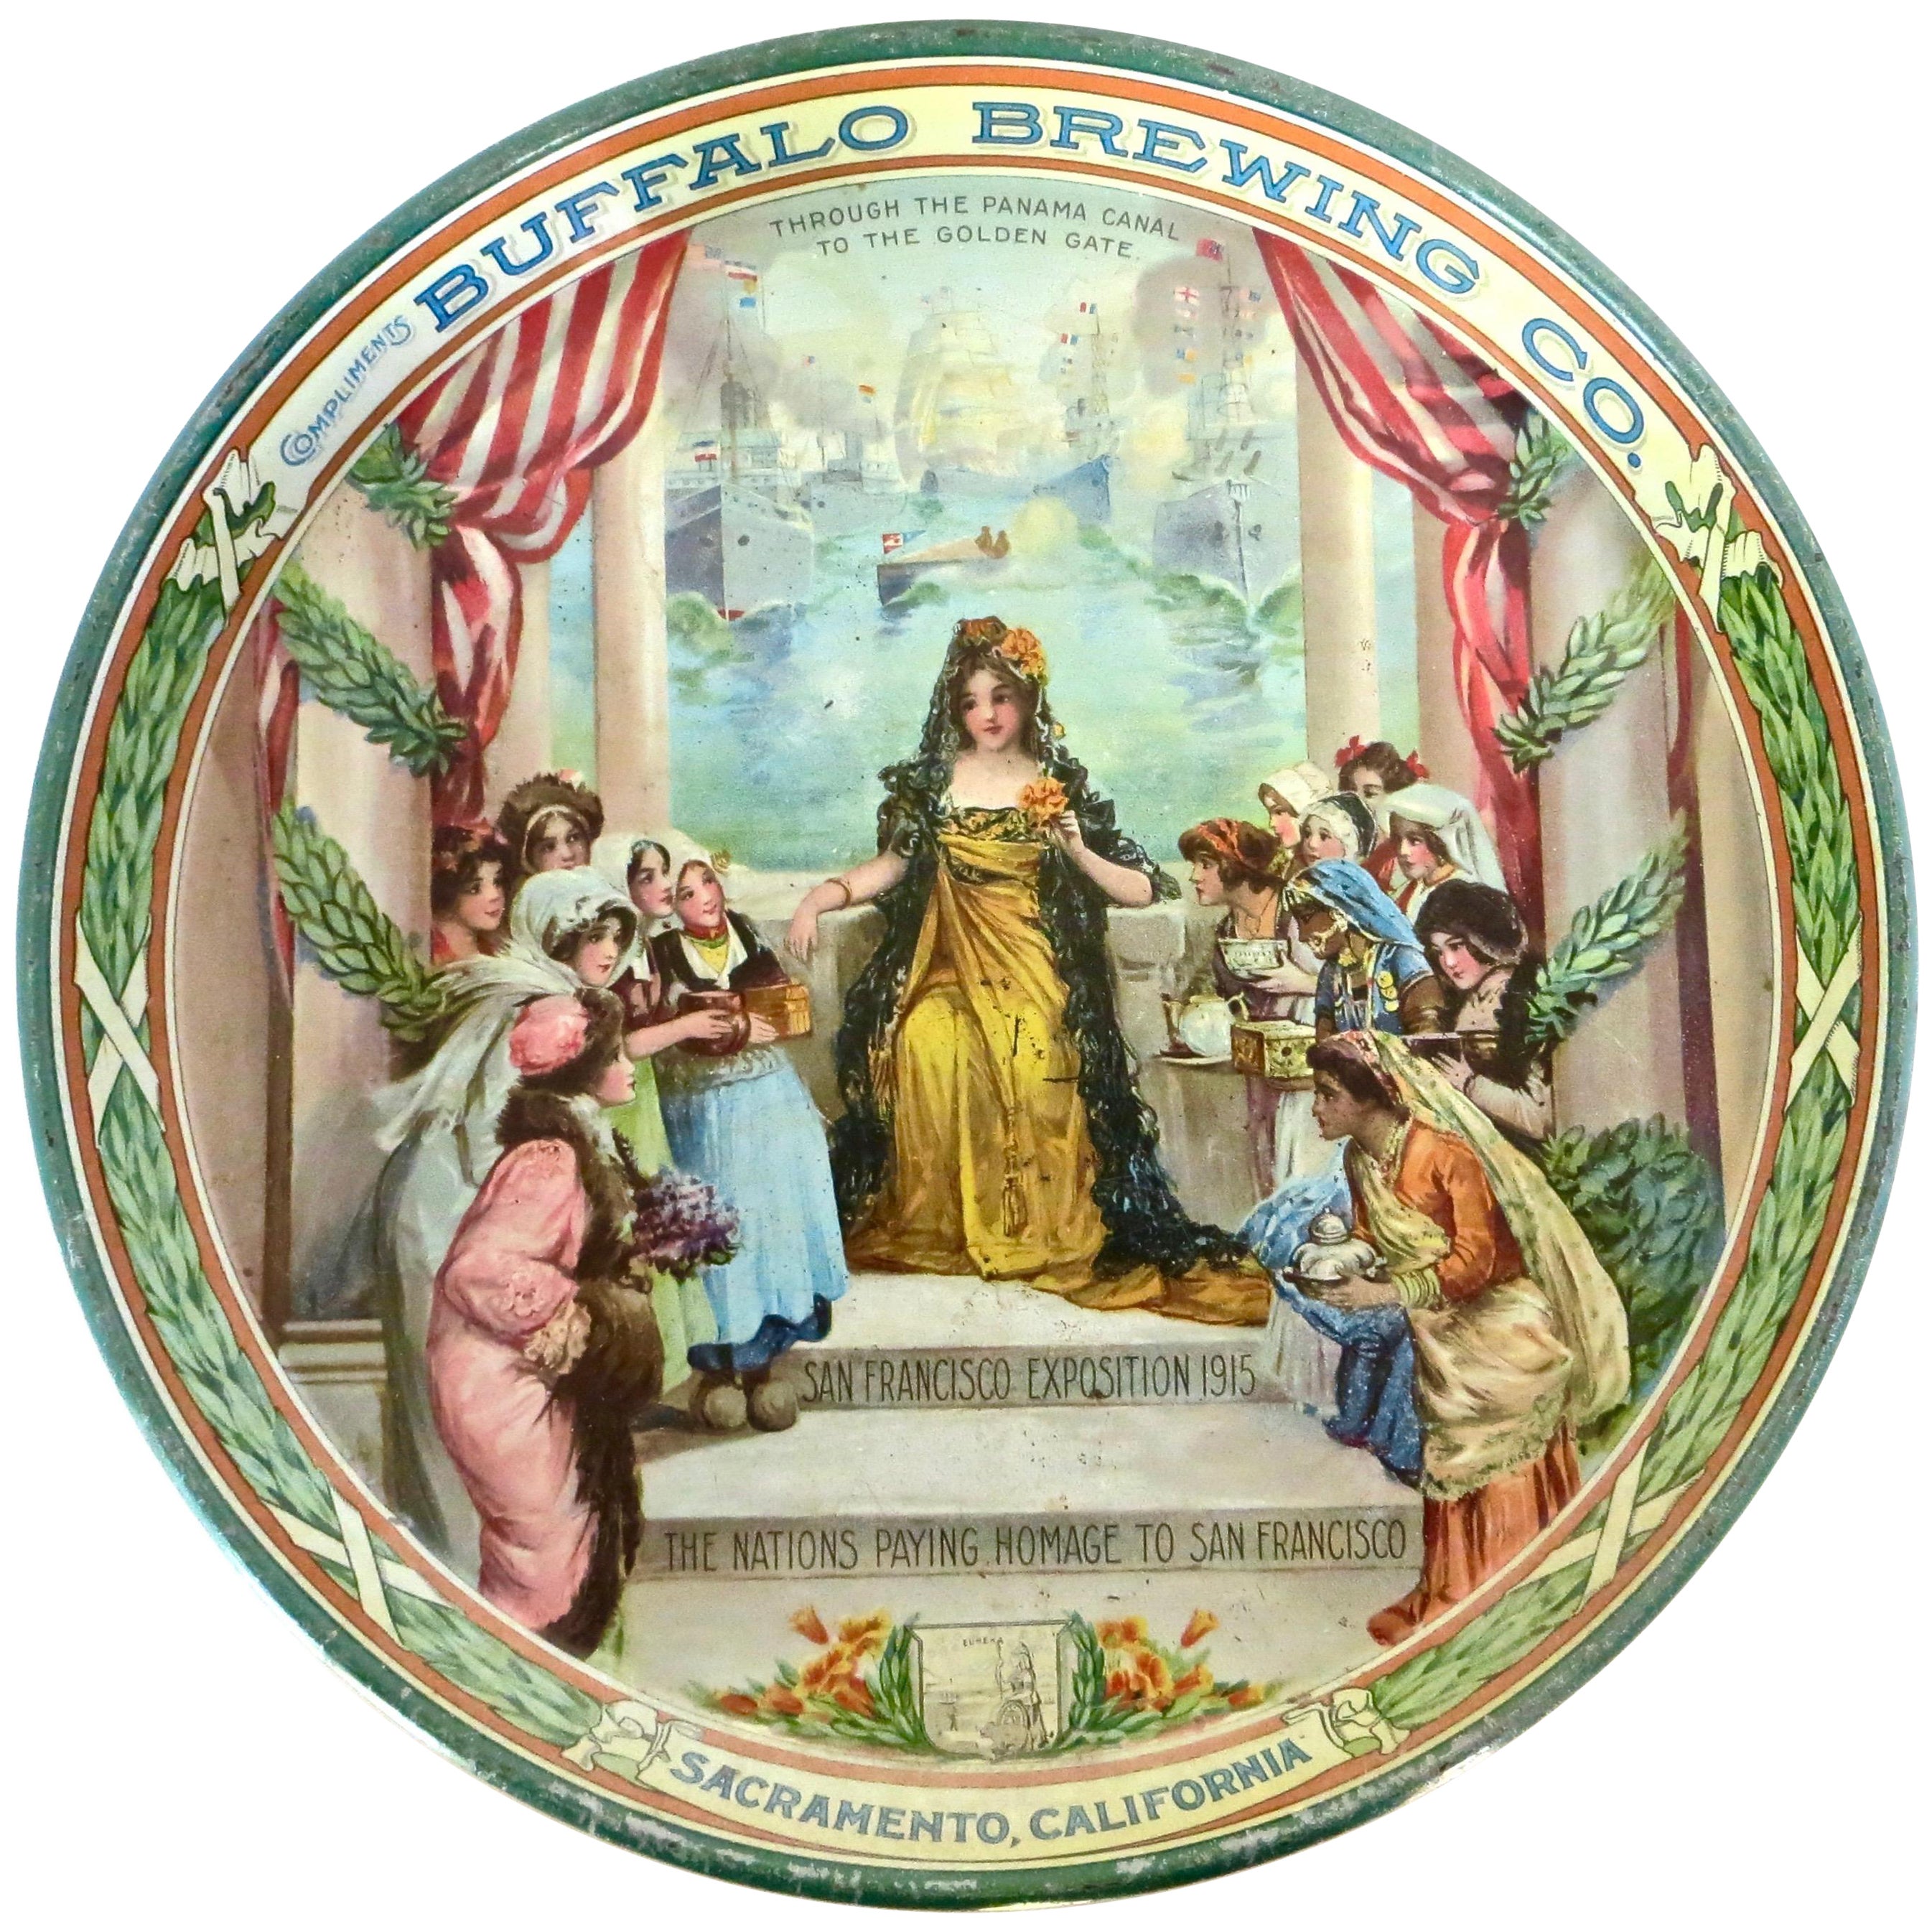 Beer Serving Tray "Buffalo Brewing Co." Sacramento, California Dated 1915